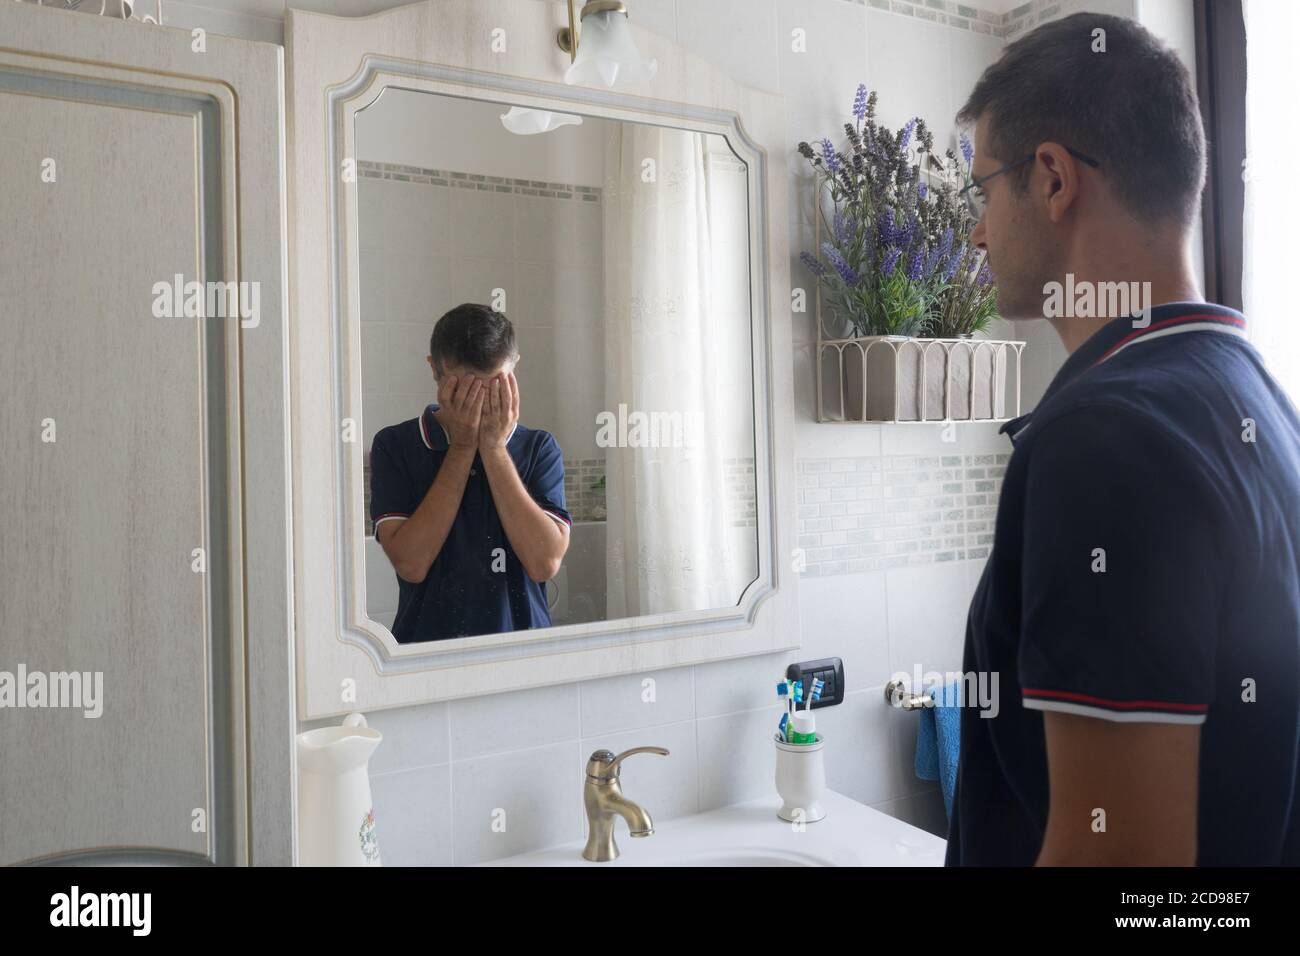 Der junge Mann, der vor dem Spiegel steht, sieht sich in verzweifelter Reflexion mit den Händen im Gesicht. Konzept der Depression oder psychischen Erkrankungen. Stockfoto